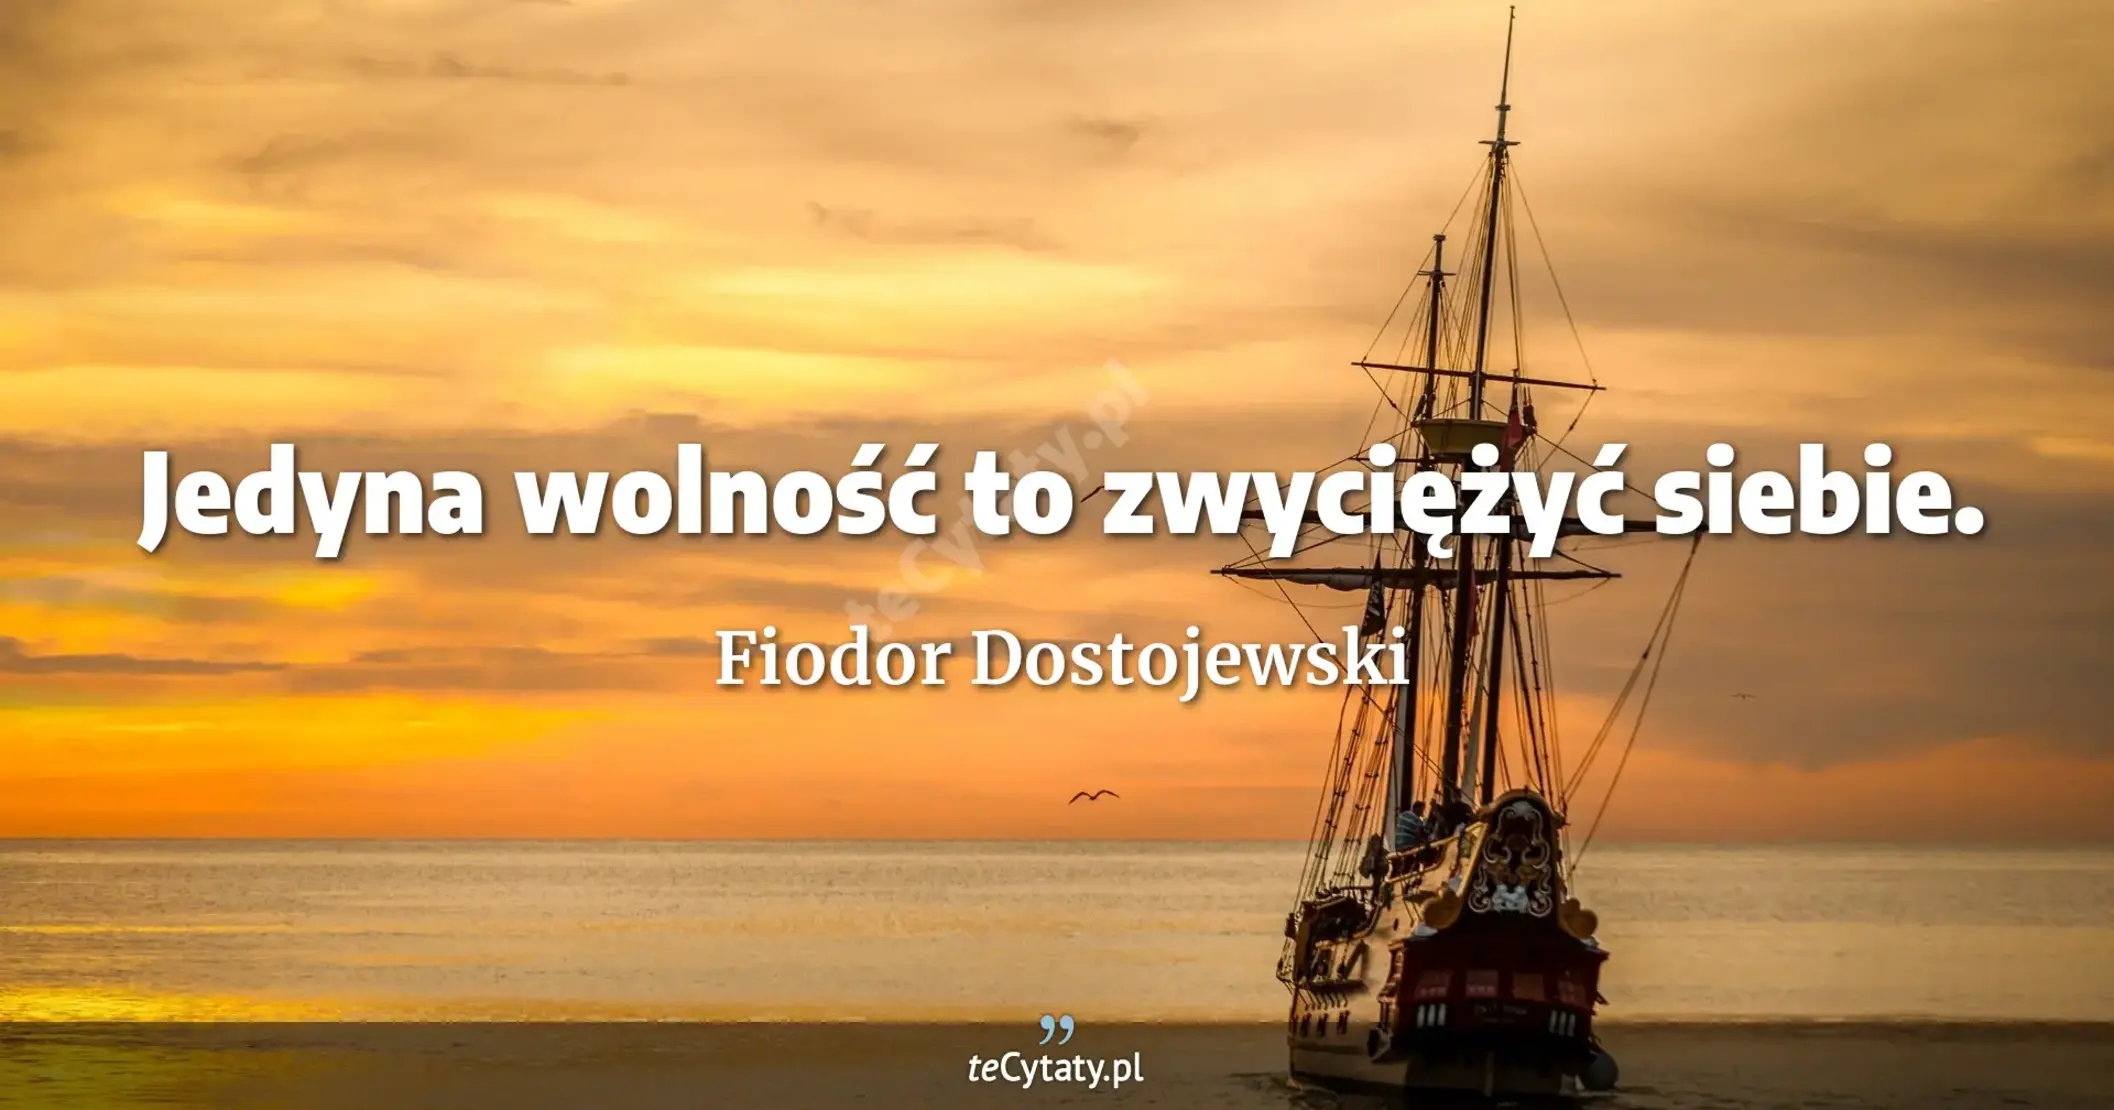 Jedyna wolność to zwyciężyć siebie. - Fiodor Dostojewski